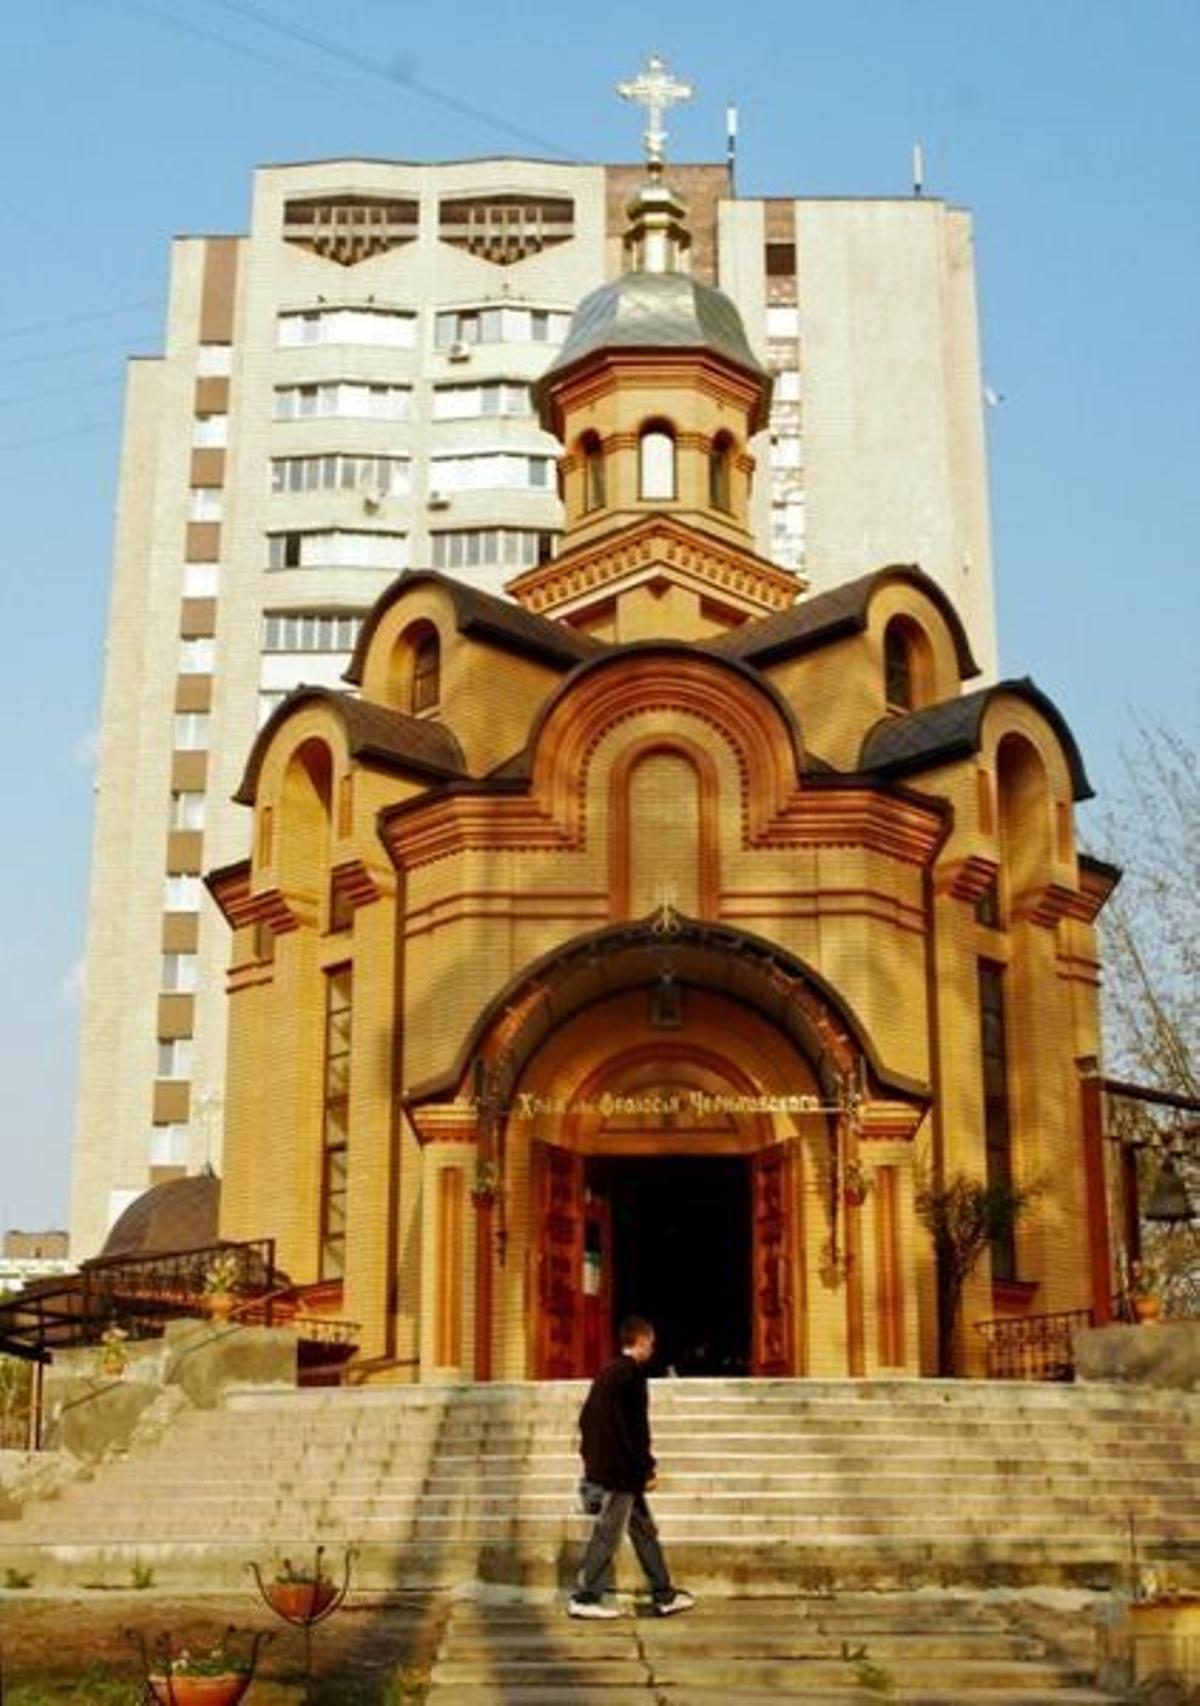 San Teodoro de Chernigov